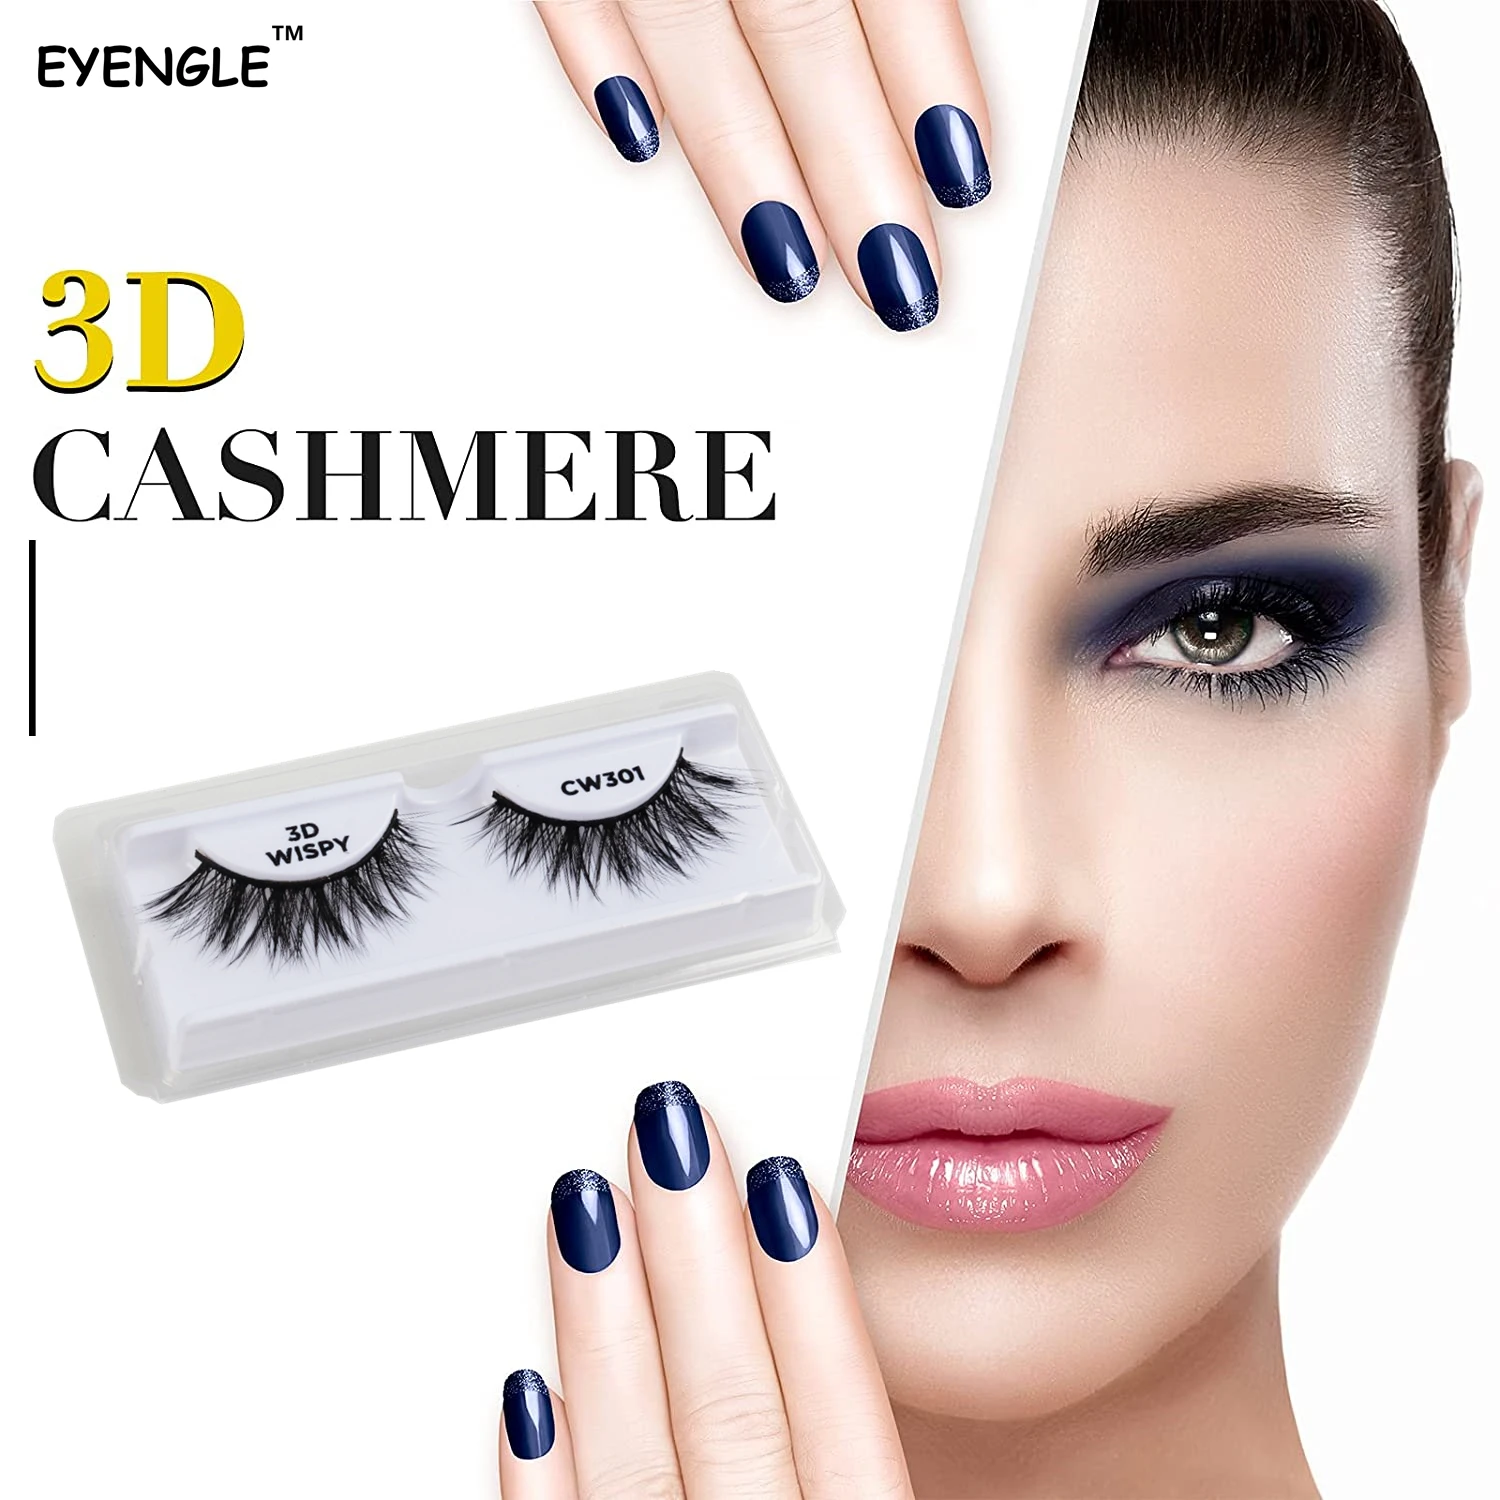 

EYENGLE 3D CASHMERE-CW False Eyelashes Wispies Fluffy Eyes Lashes Soft Cils Artificial 10-20mm Make Up Eyelash Wispy Beauty Lash